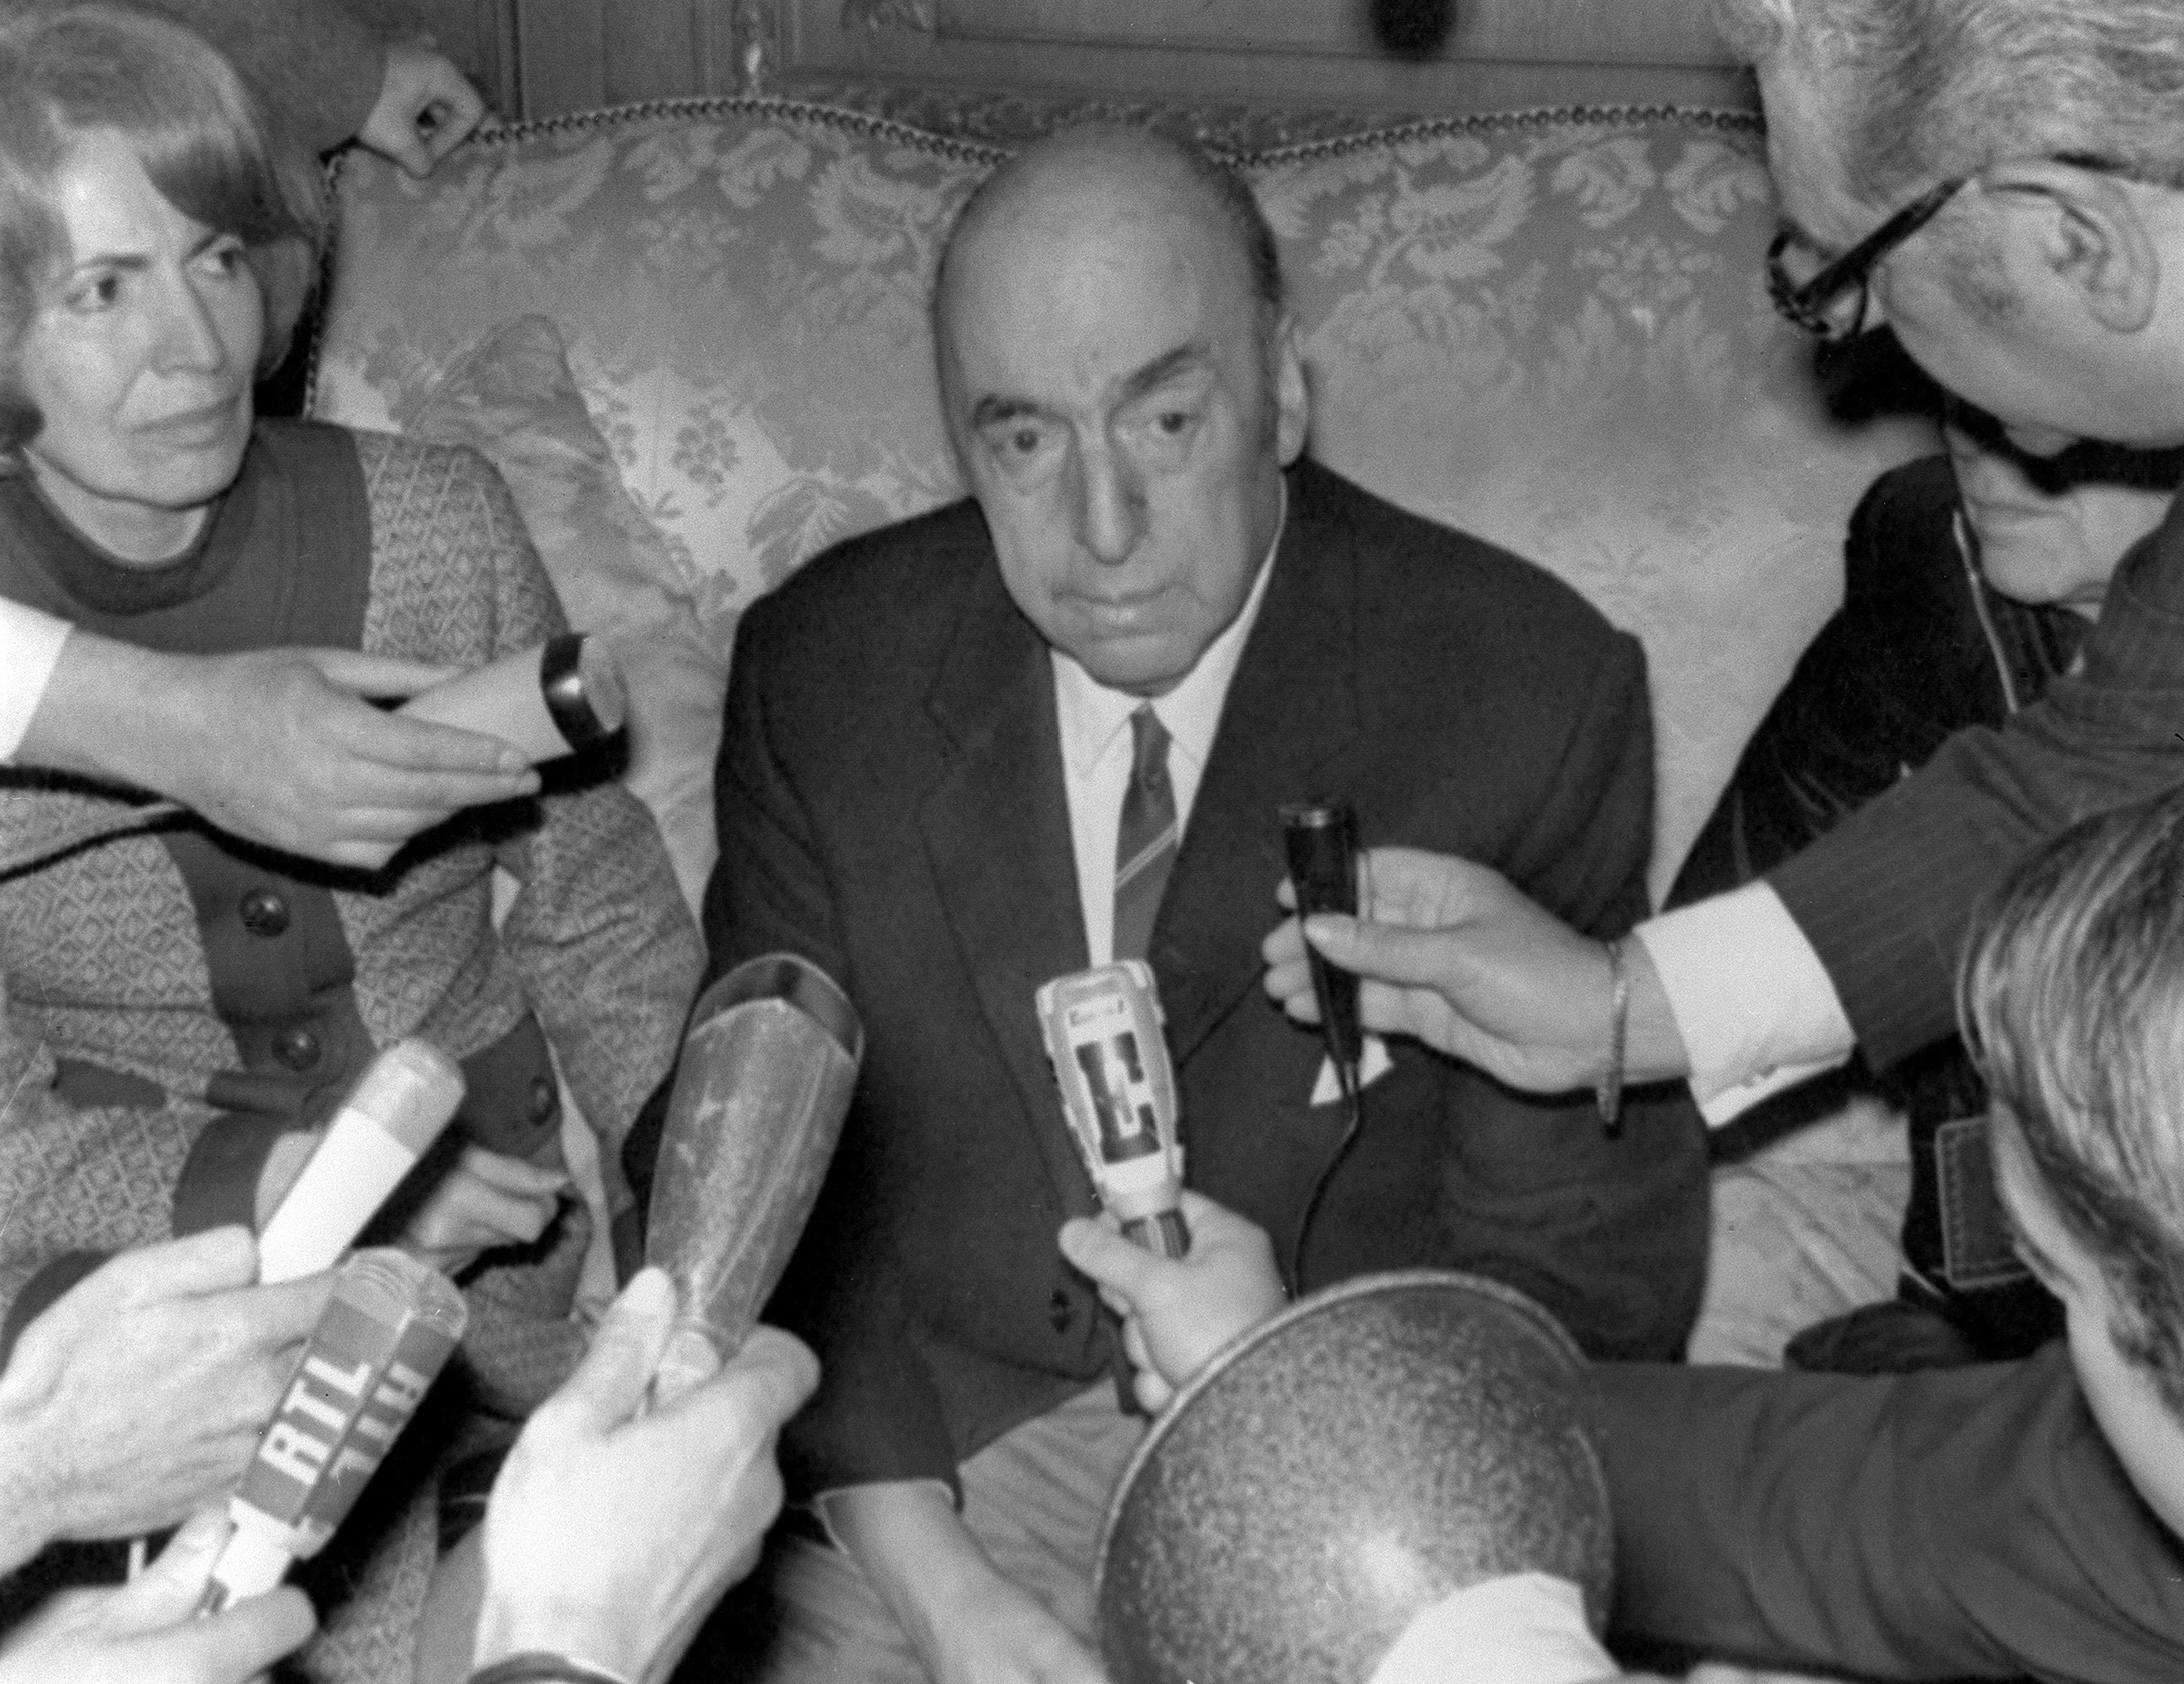 Nóbel de Neruda estuvo en el aire por su "tendencia comunista", según diario